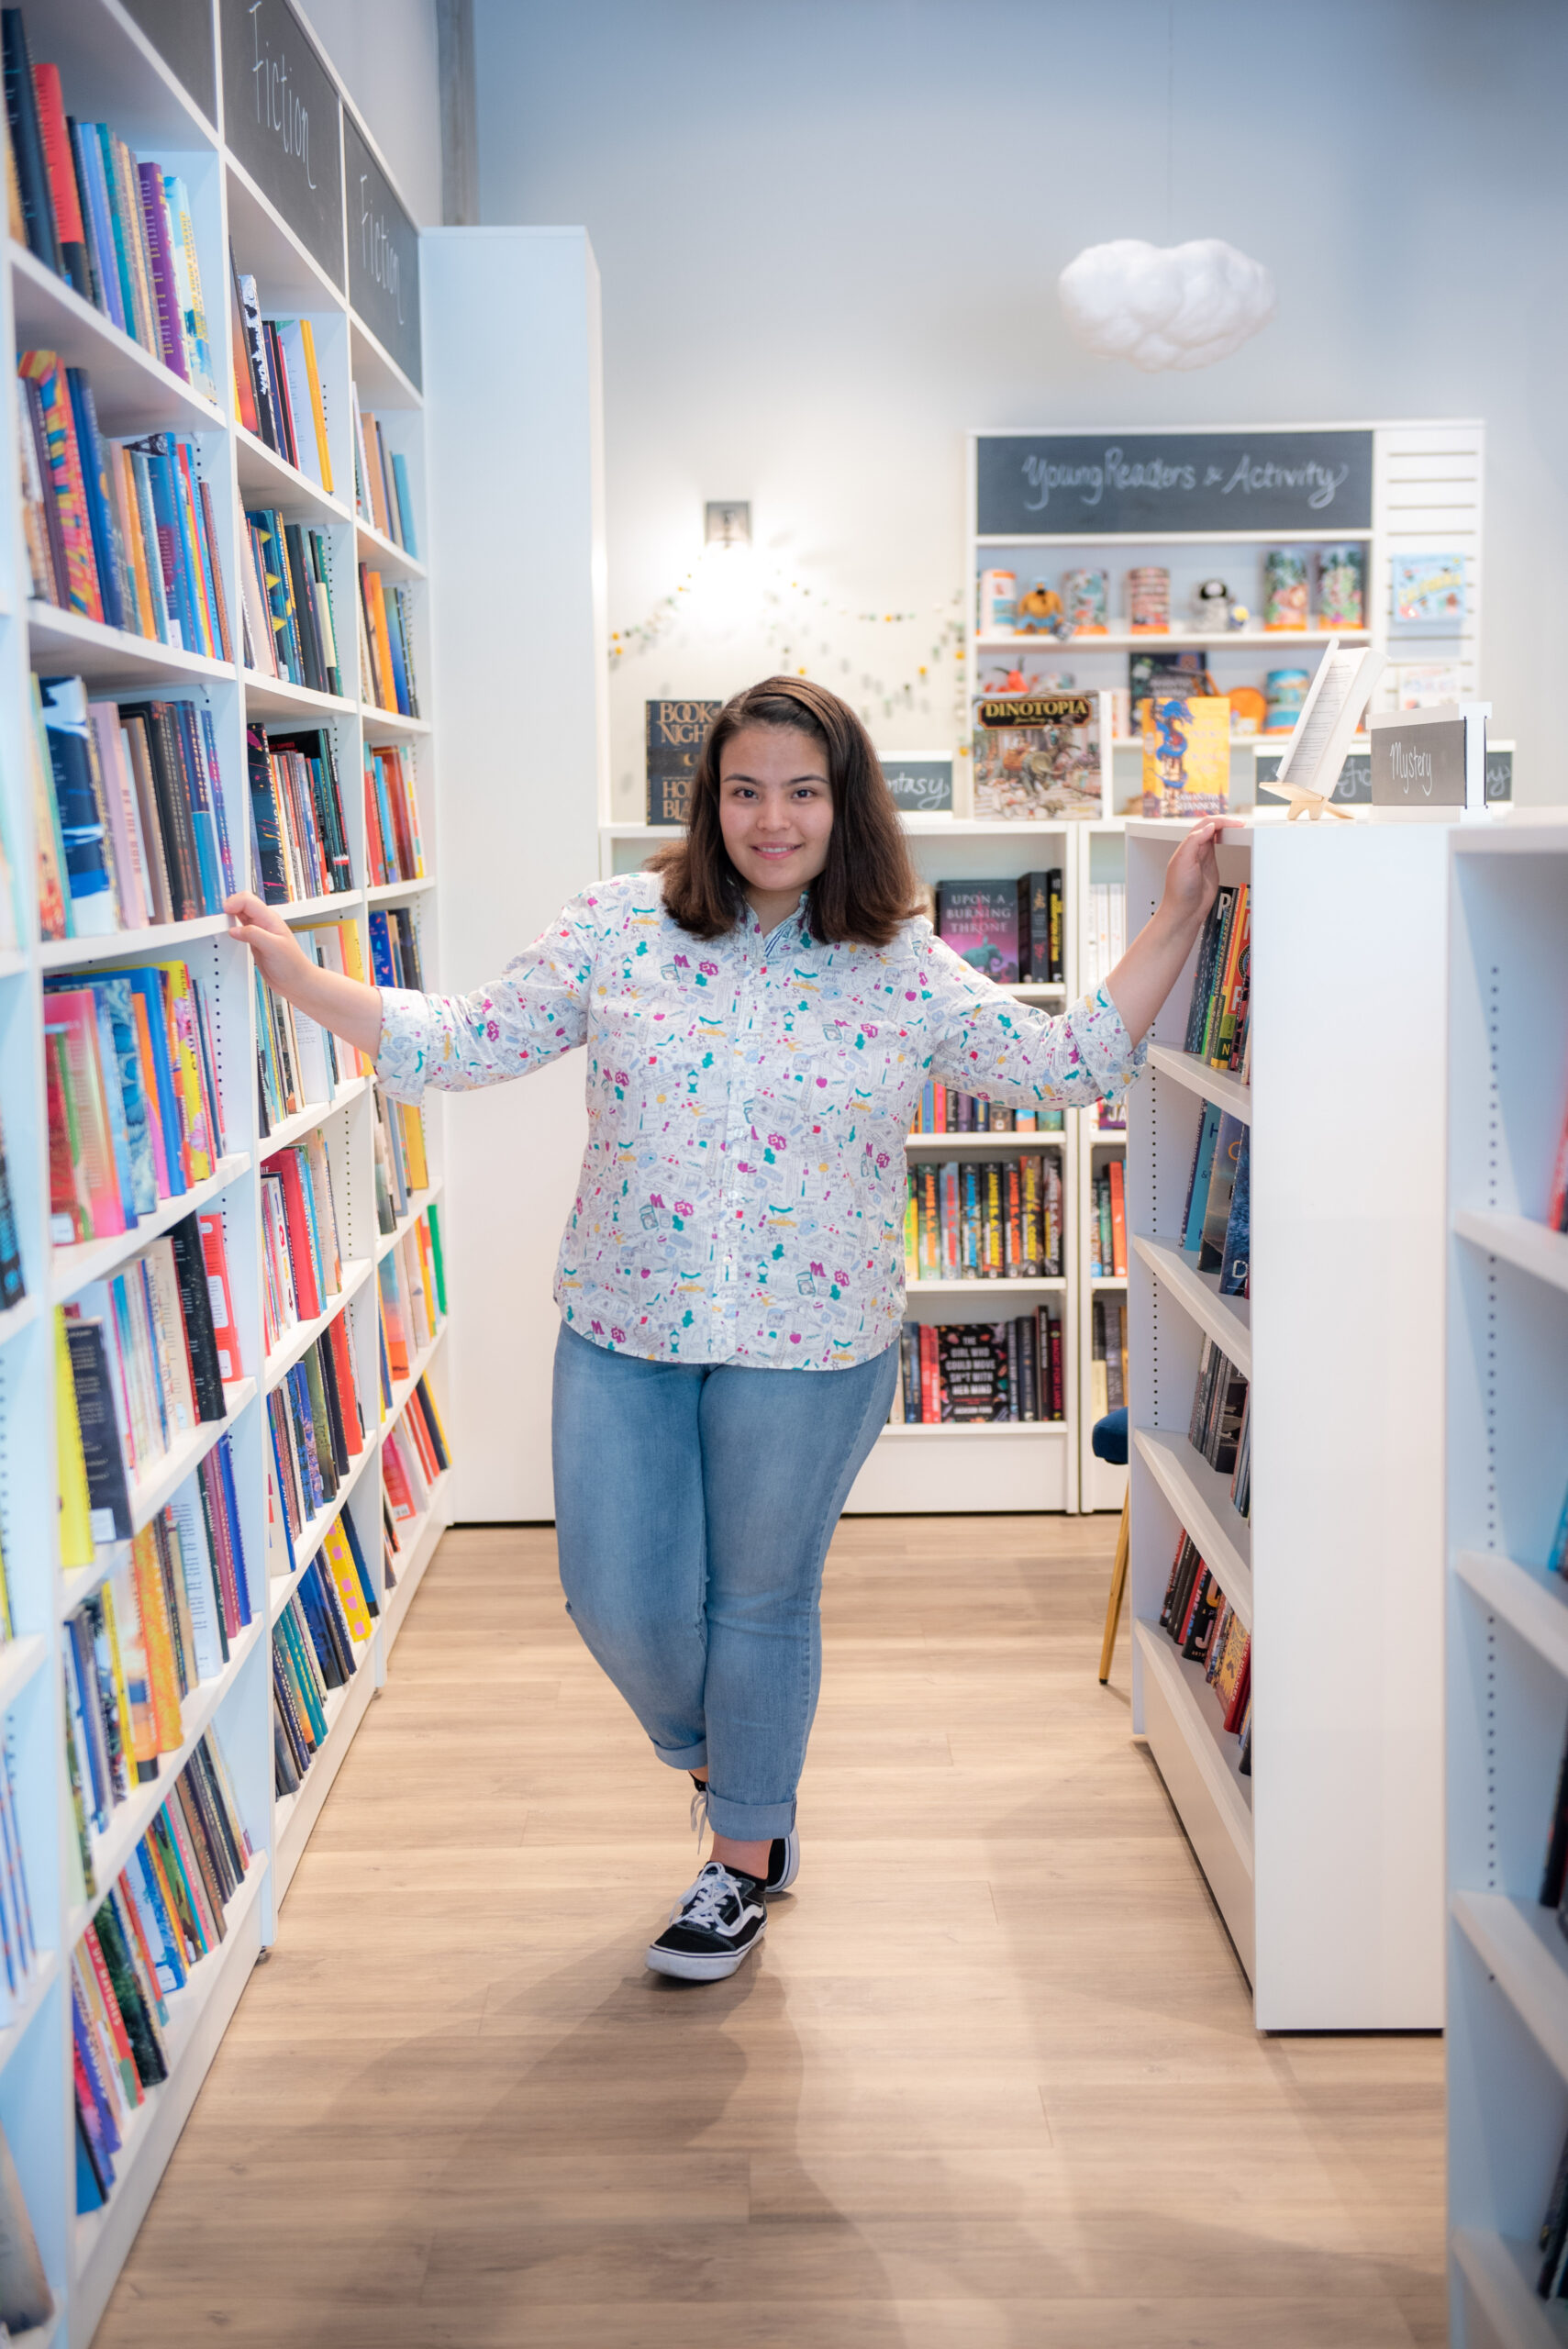 Teen girl between bookshelves in bookstore